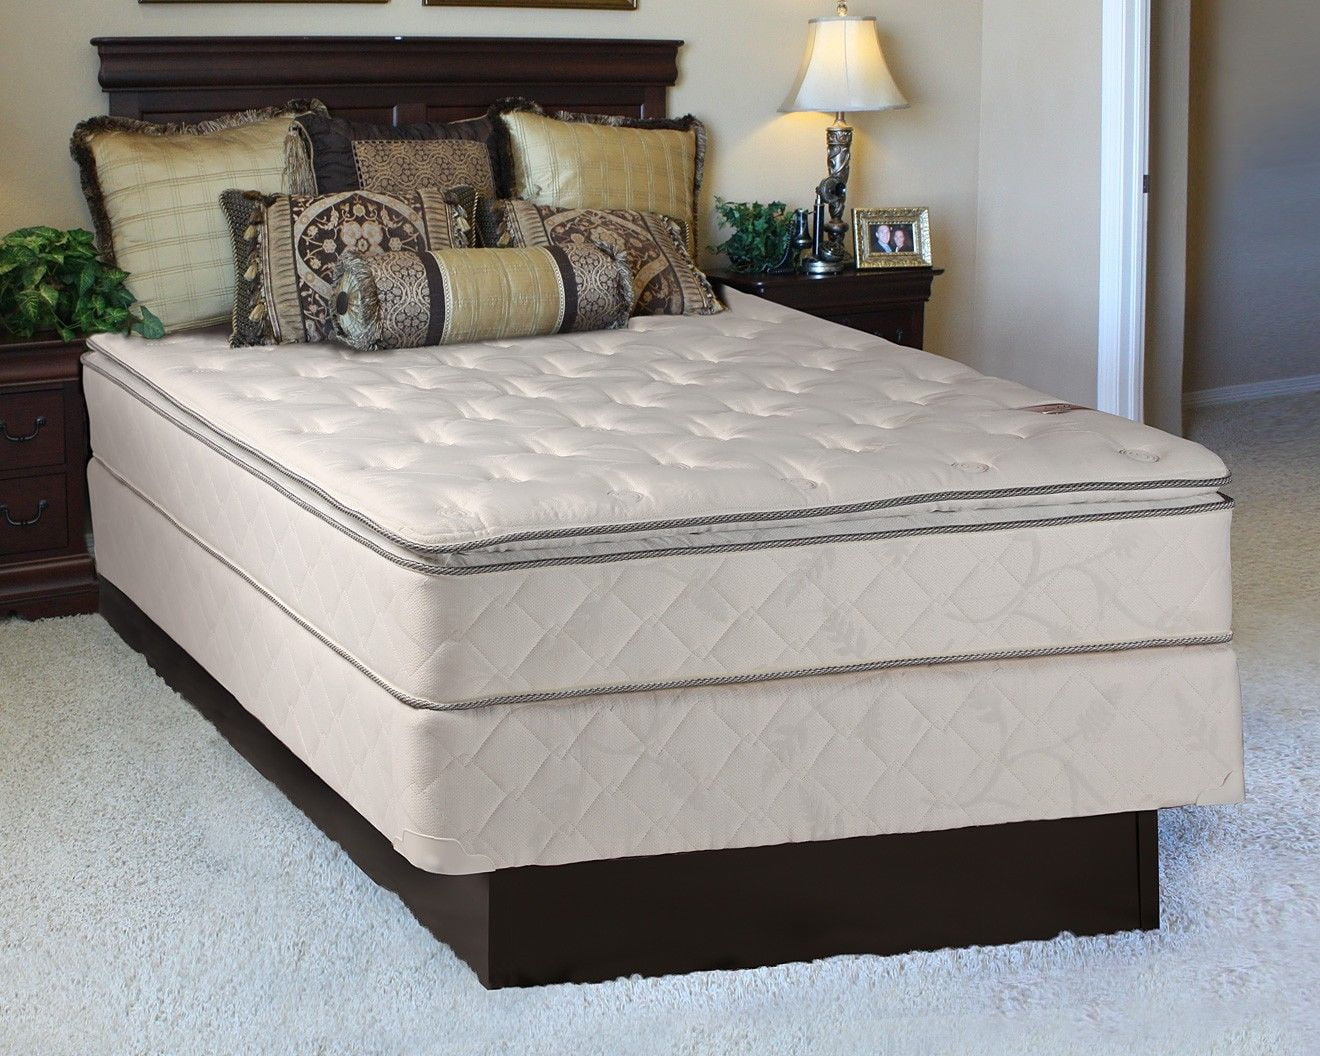 extra long queen bed mattress